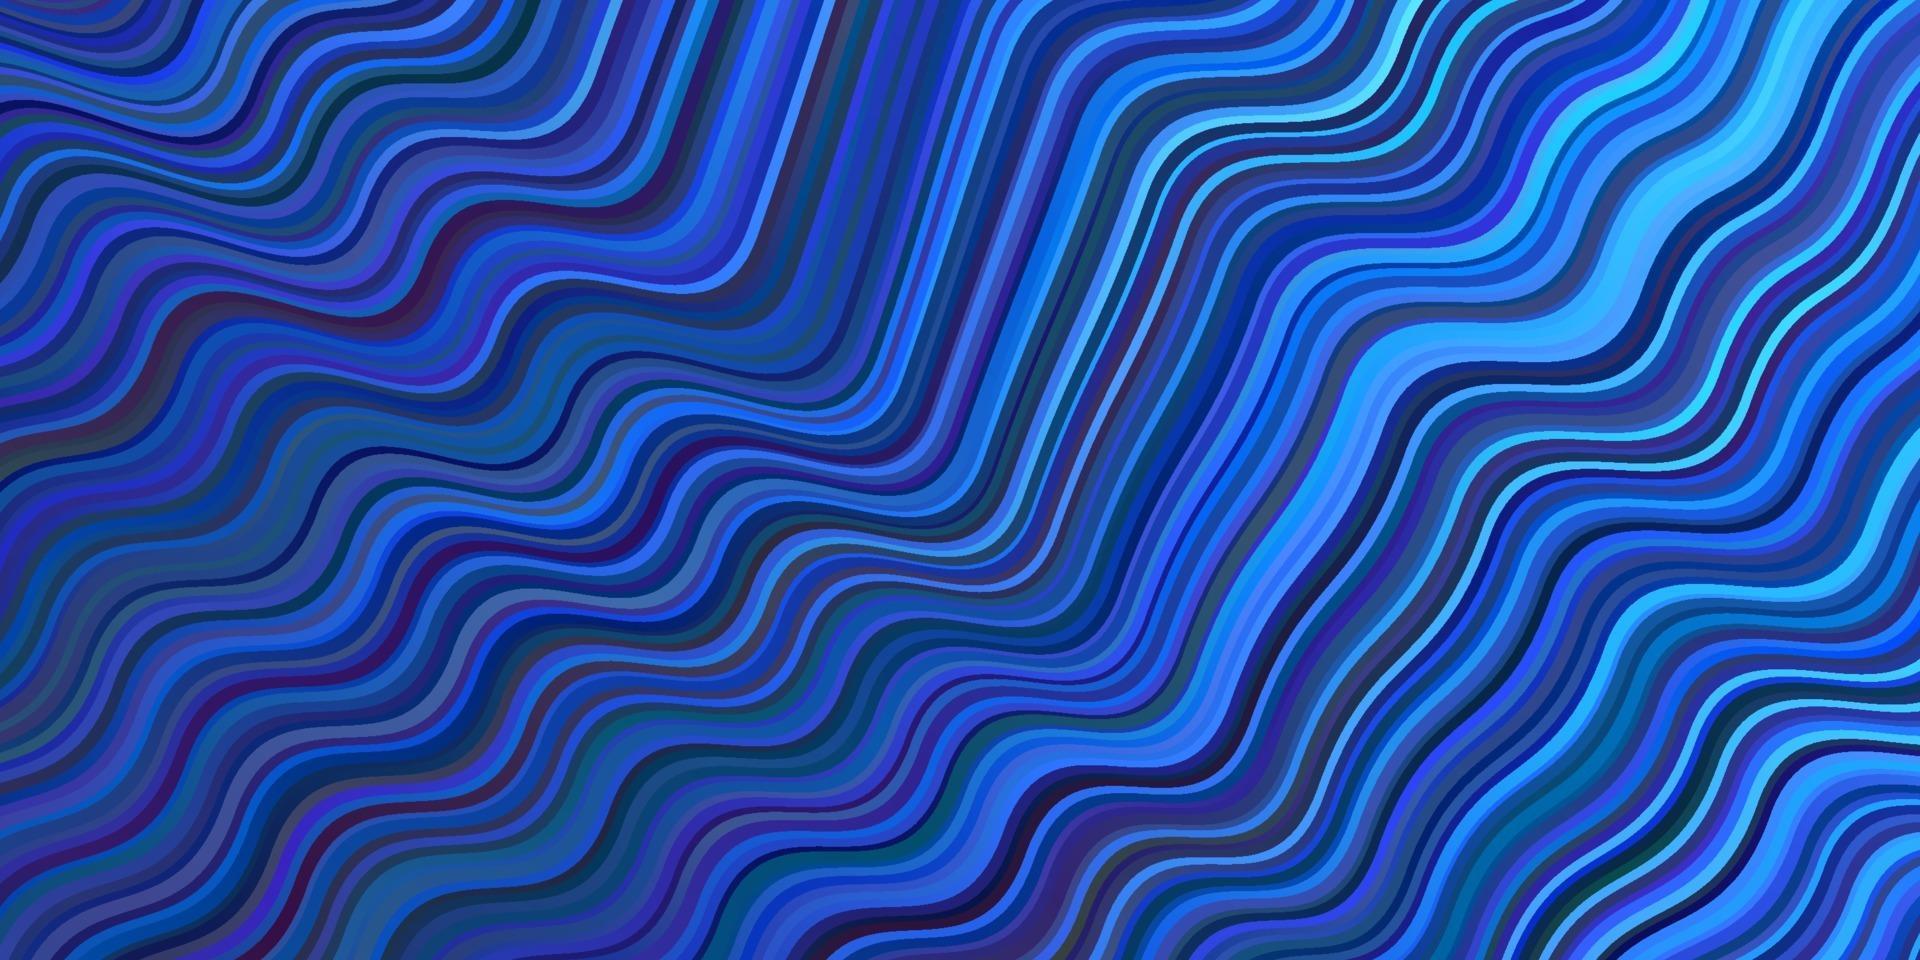 textura vector azul escuro com linhas curvas.